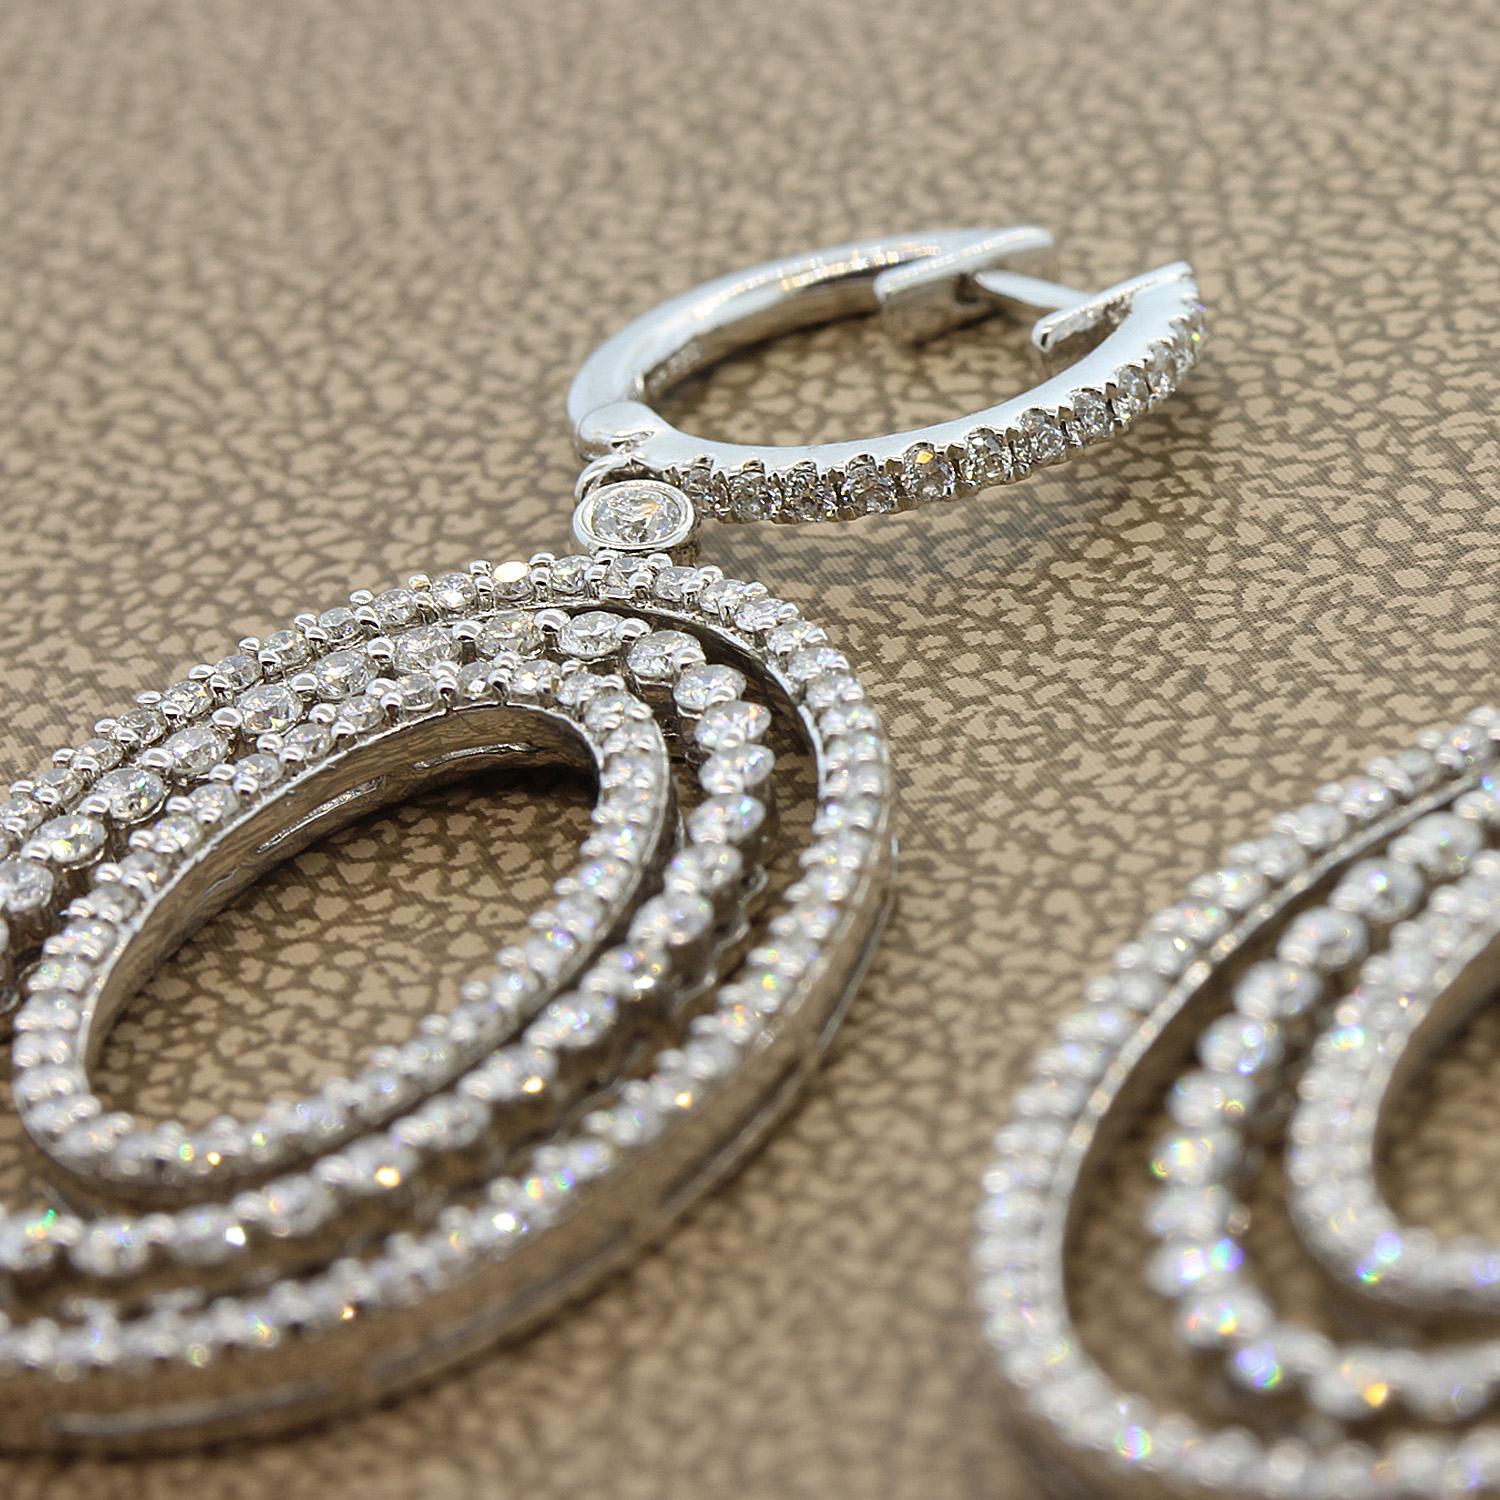 Ein luxuriöses Paar Diamant-Ohrringe aus Gold mit 3 diamantbesetzten Goldtropfen. Das Gesamtgewicht der Diamanten beträgt 3,44 Karat, runder Brillantschliff. Diese Ohrringe aus 18 Karat Weißgold sind wirklich etwas für eine besondere Frau.

Länge: 2